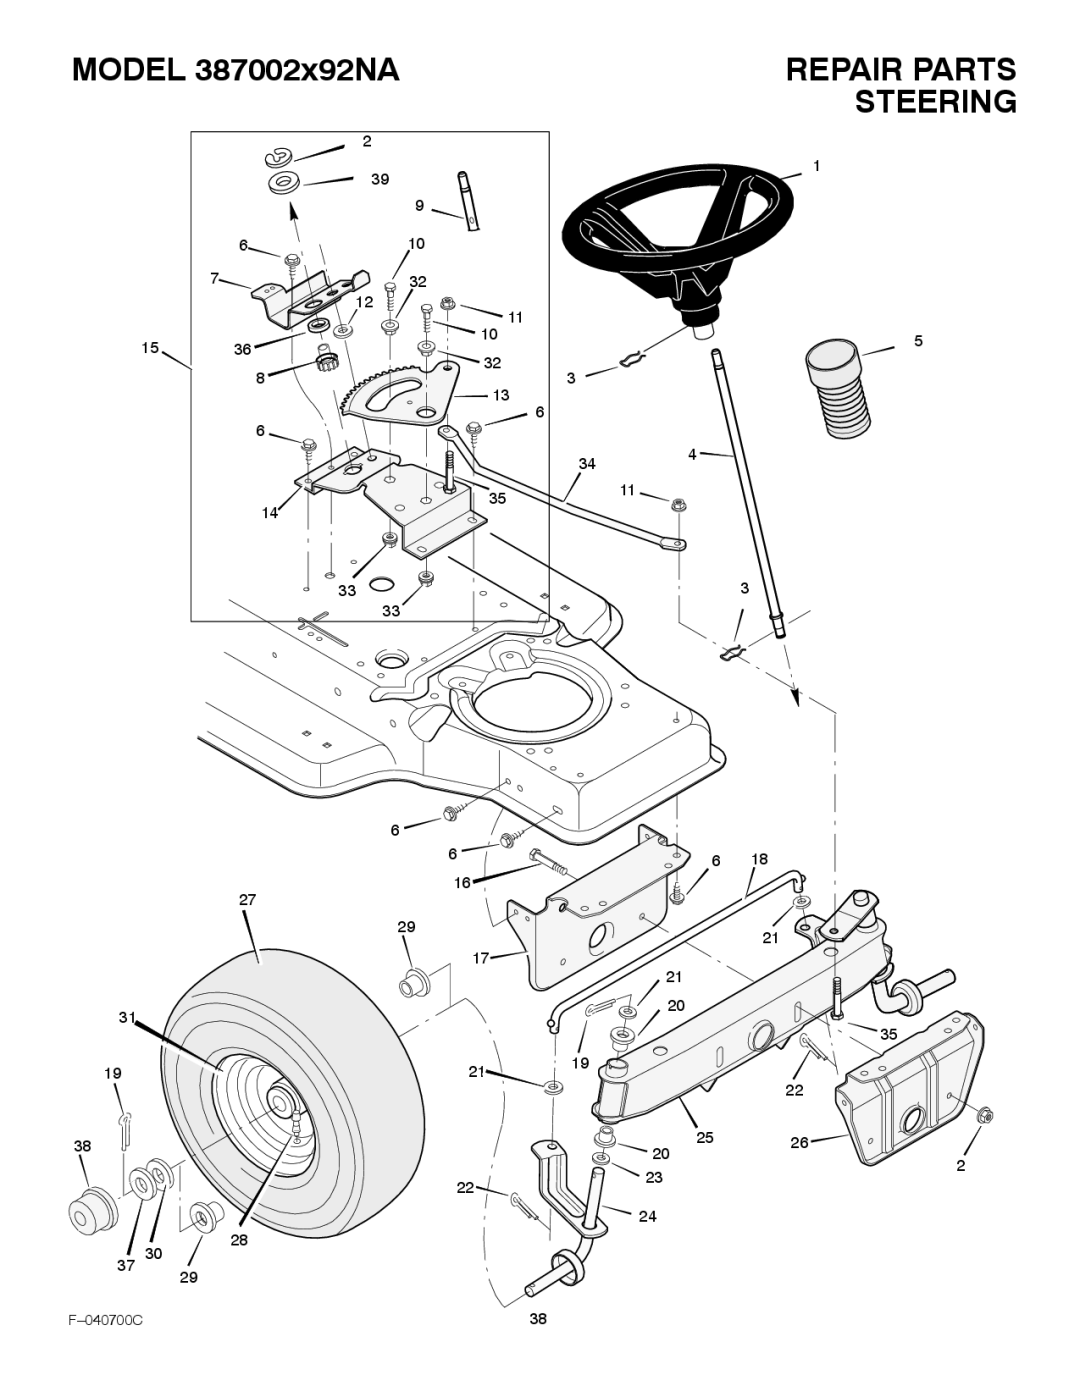 Stanley Black & Decker 387002x92NA manual Repair Parts, Steering 